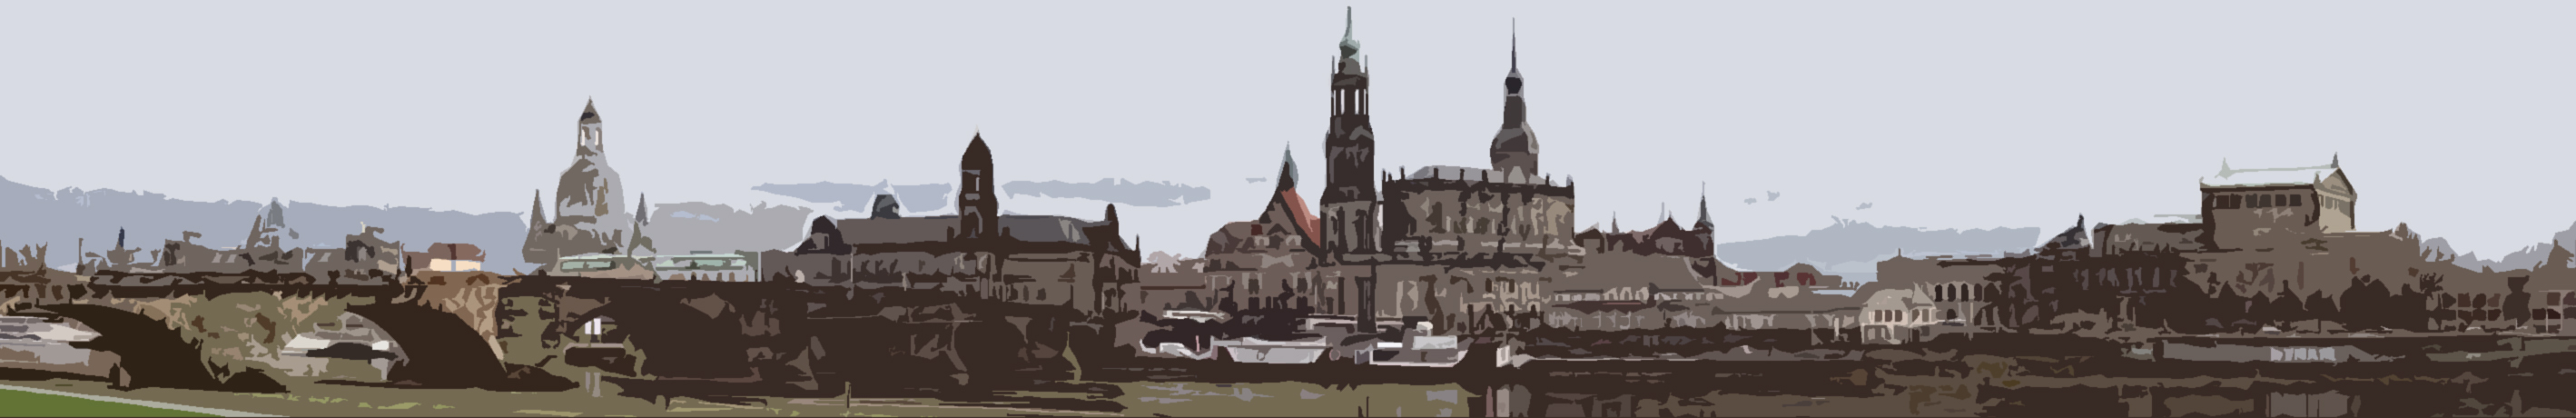 Blick auf Dresden vom Neustädter Elbufer aus. Augustusbrücke, Frauenkirche, Ständehaus, Georgentor, Hofkirche, Semperoper